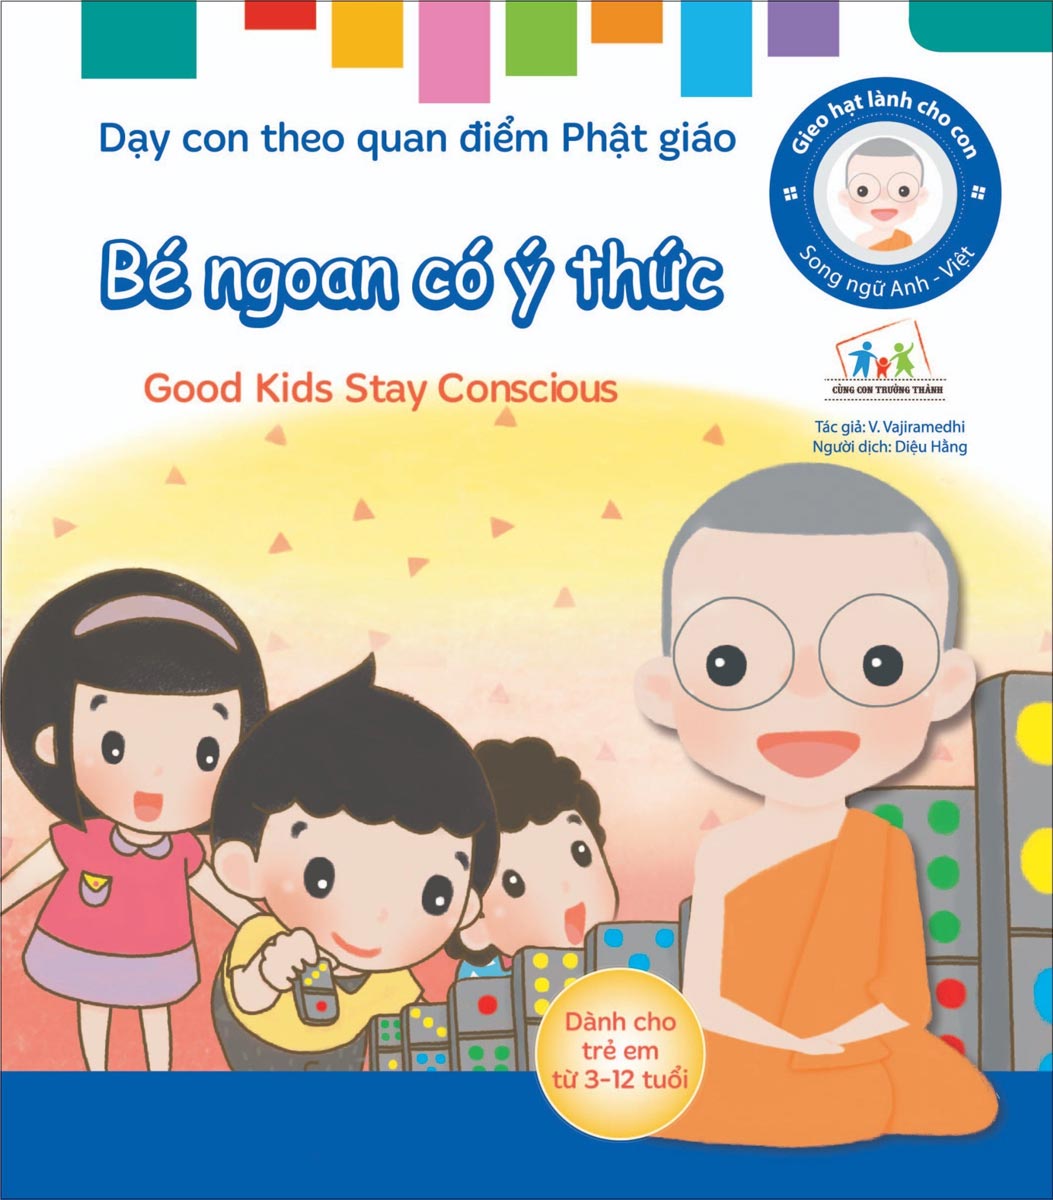 Gieo Hạt Lành Cho Con - Dạy Con Theo Quan Điểm Phật Giáo - Good Kids Stay Conscious - Bé Ngoan Có Ý Thức 